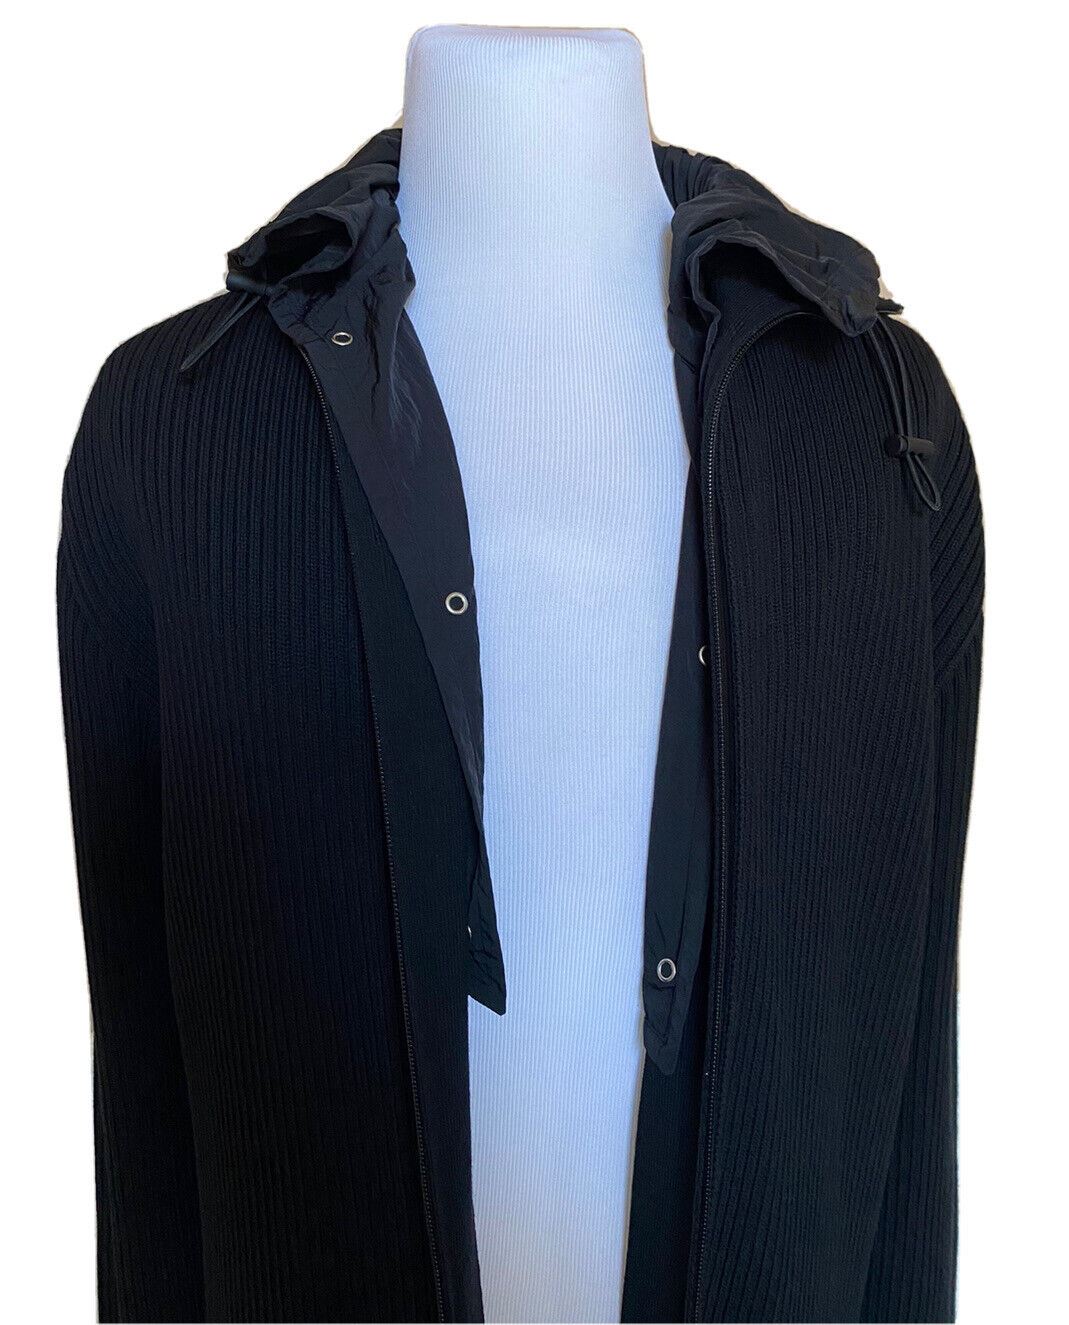 СЗТ 1750 долларов США Bottega Veneta Мужская куртка-свитер из массивного хлопка черного цвета L (подходит для размера XL)